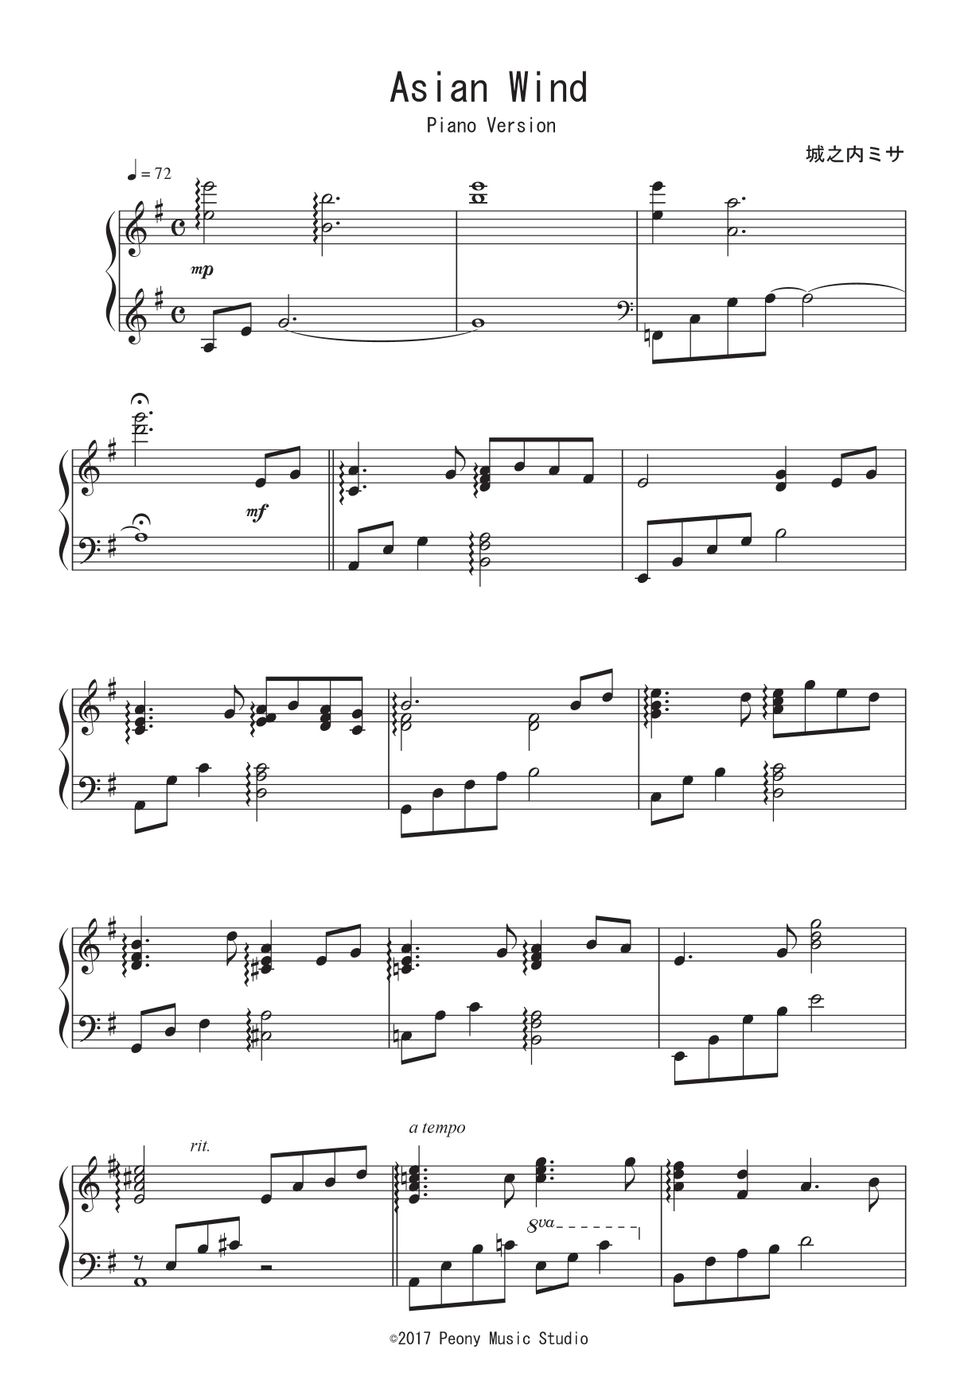 城之内ミサ - Asian Wind(Piano Version) (完コピ) by Peony